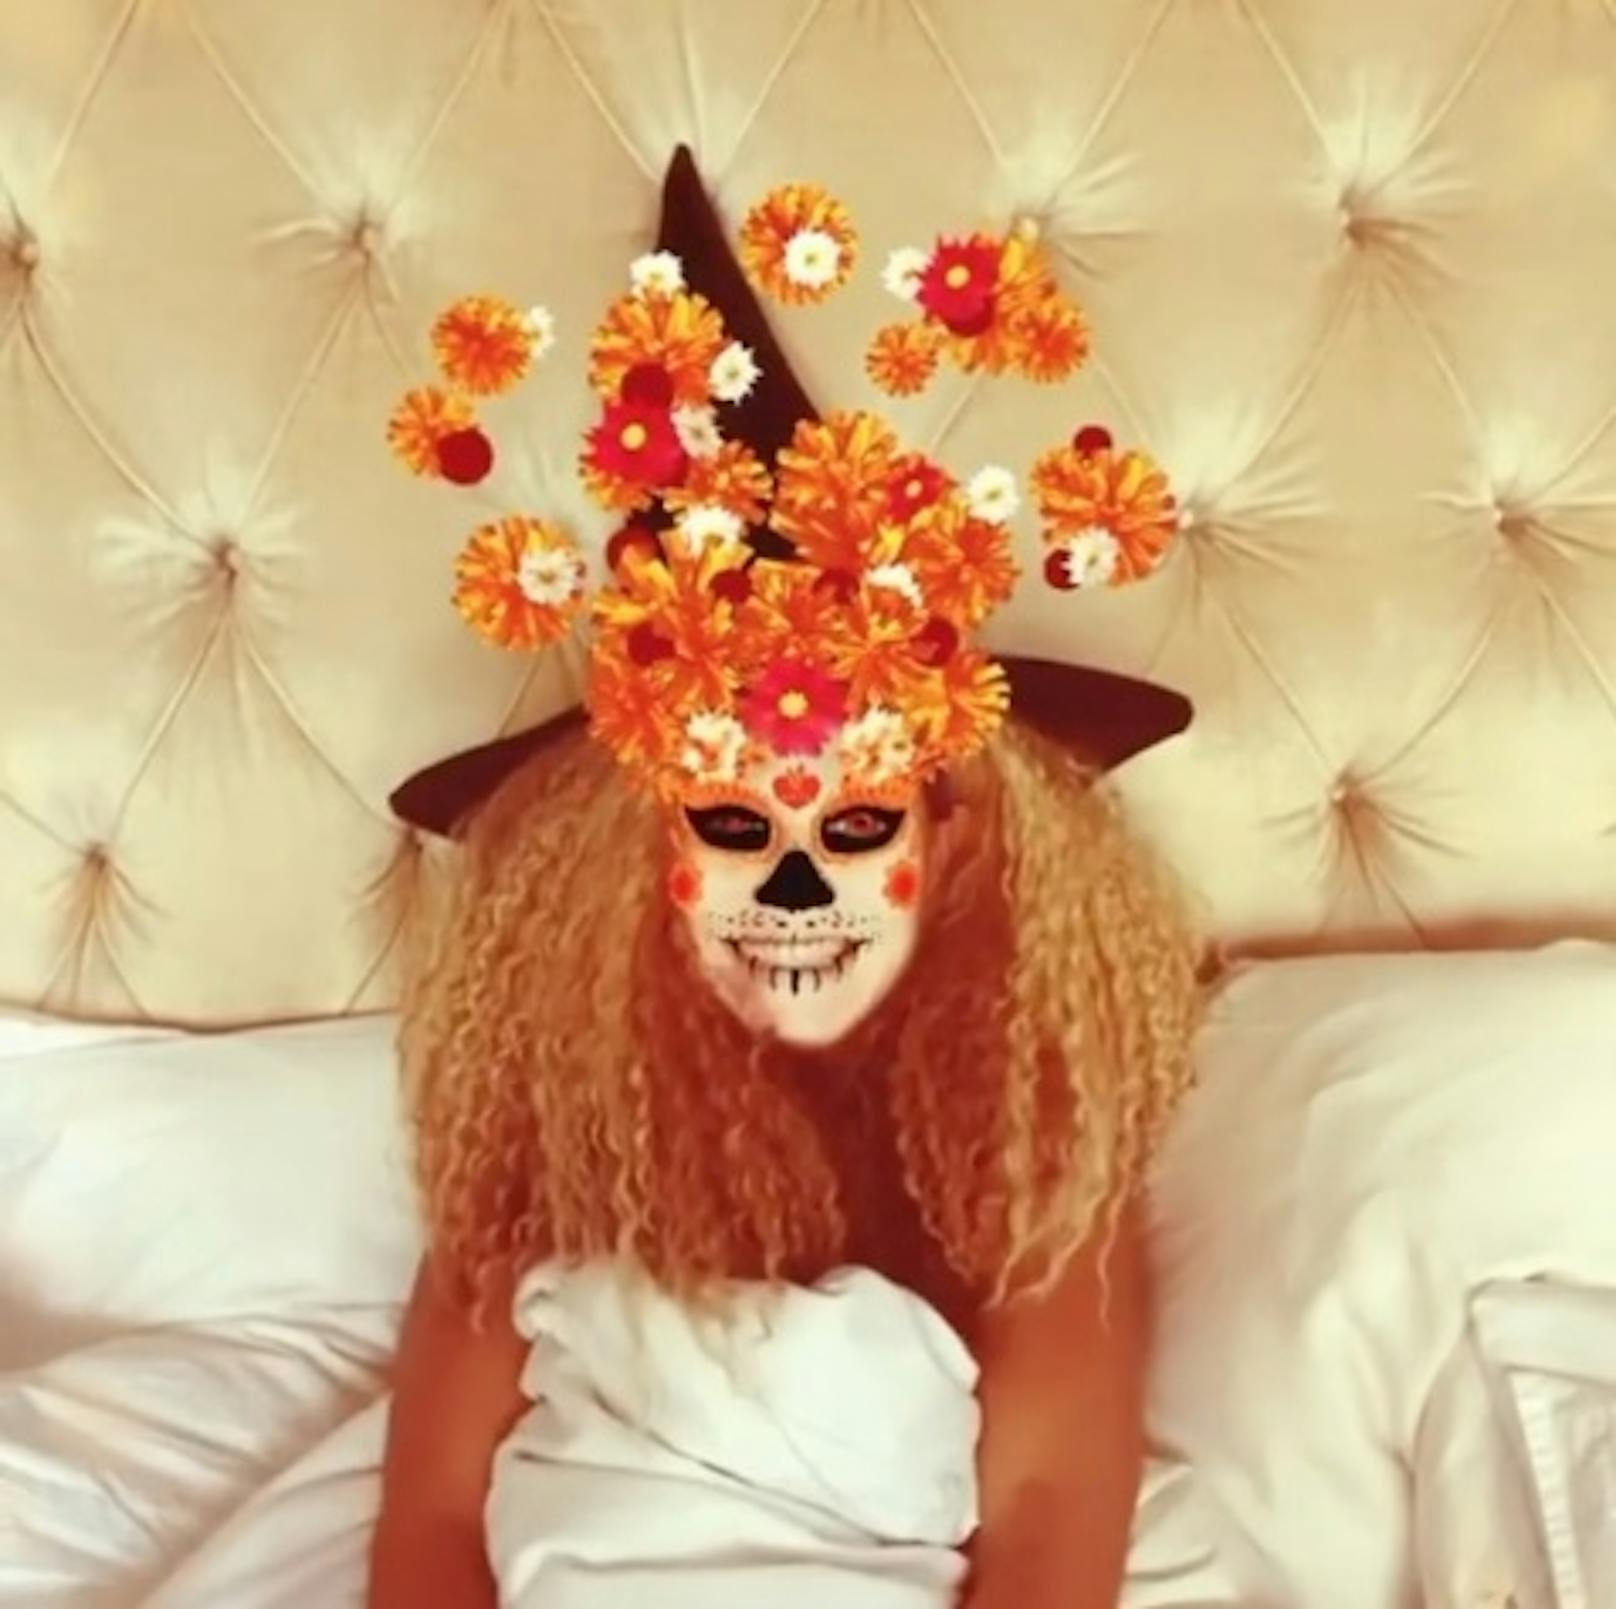 Heidi Klum verbrachte Halloween heuer zuhause. Ihre legendäre Halloween-Party musste aufgrund der Corona-Pandemie ausfallen.&nbsp;